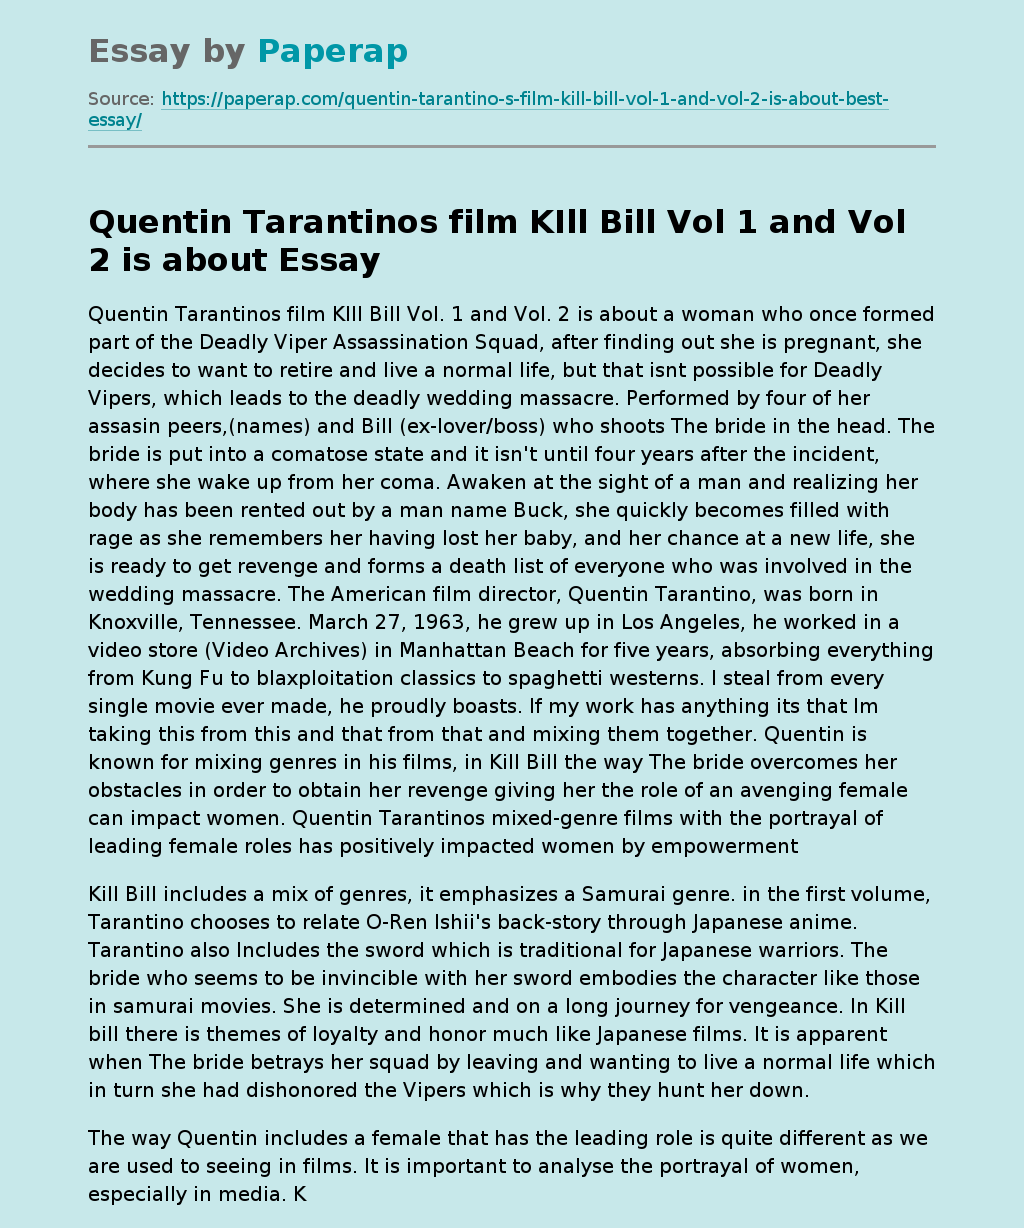 Kill Bill by Quentin Tarantino